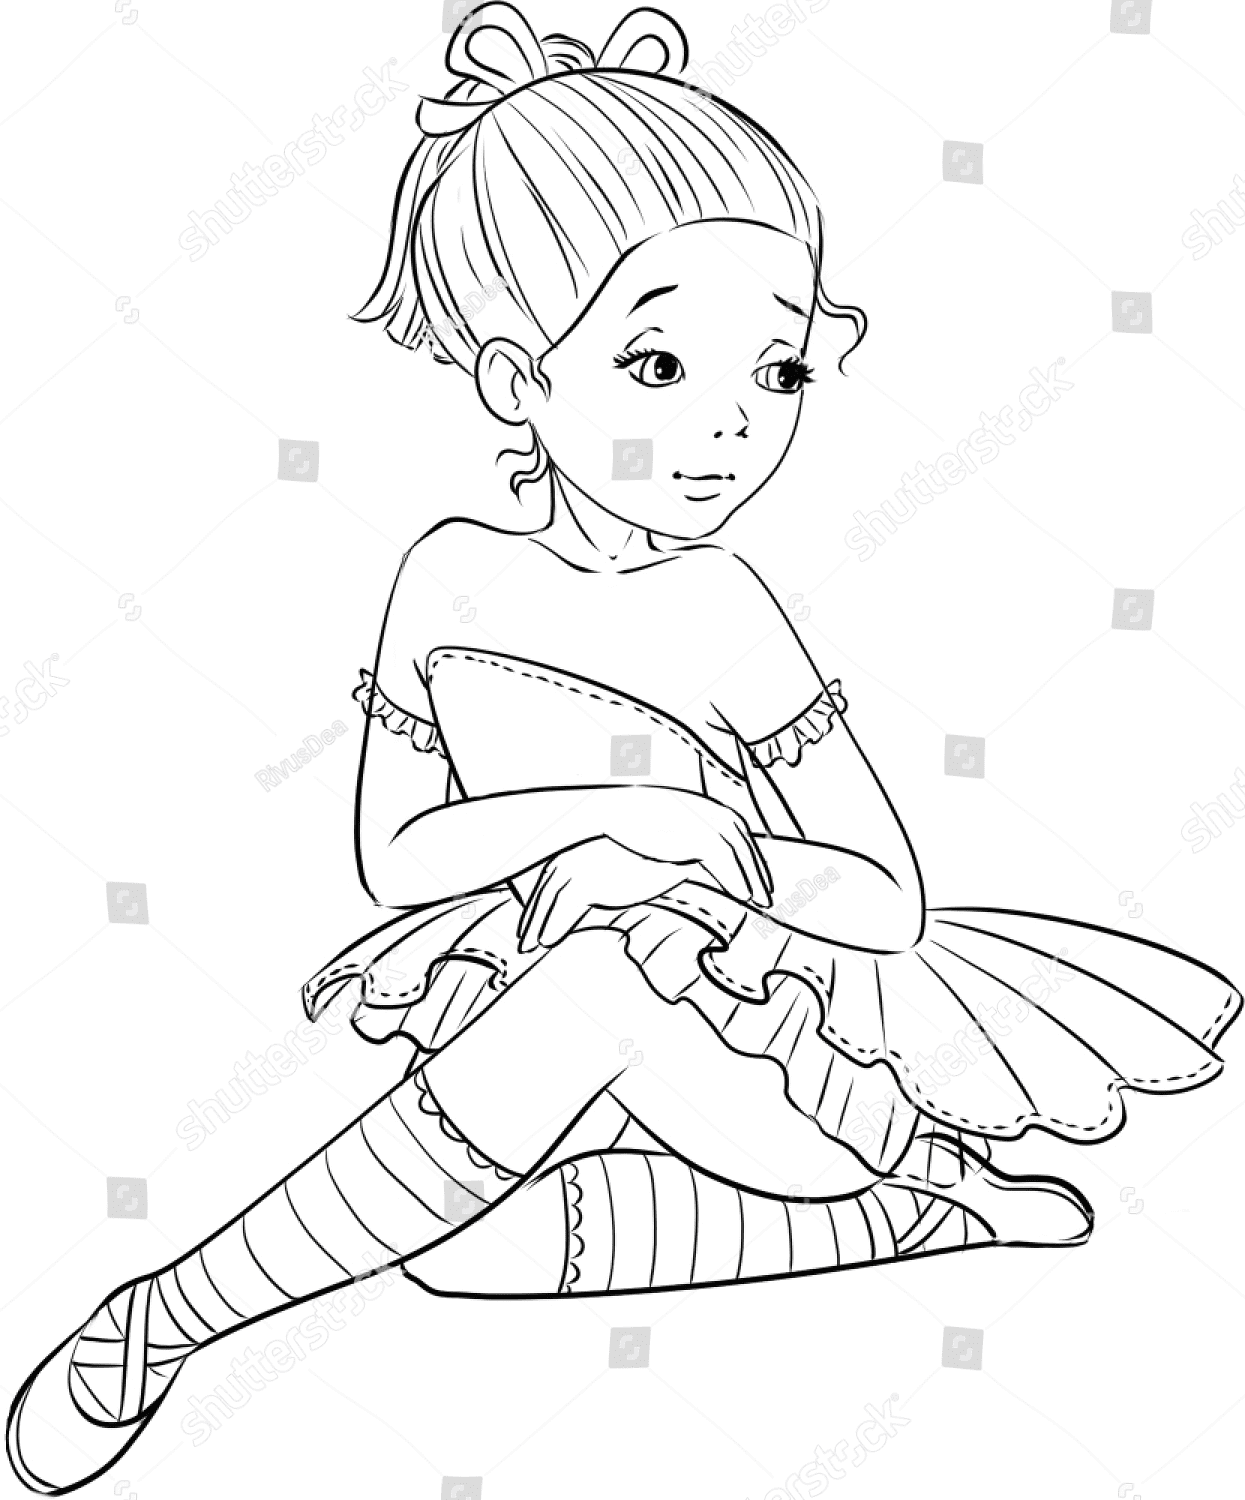 Disegni da colorare di bella bambina ballerina